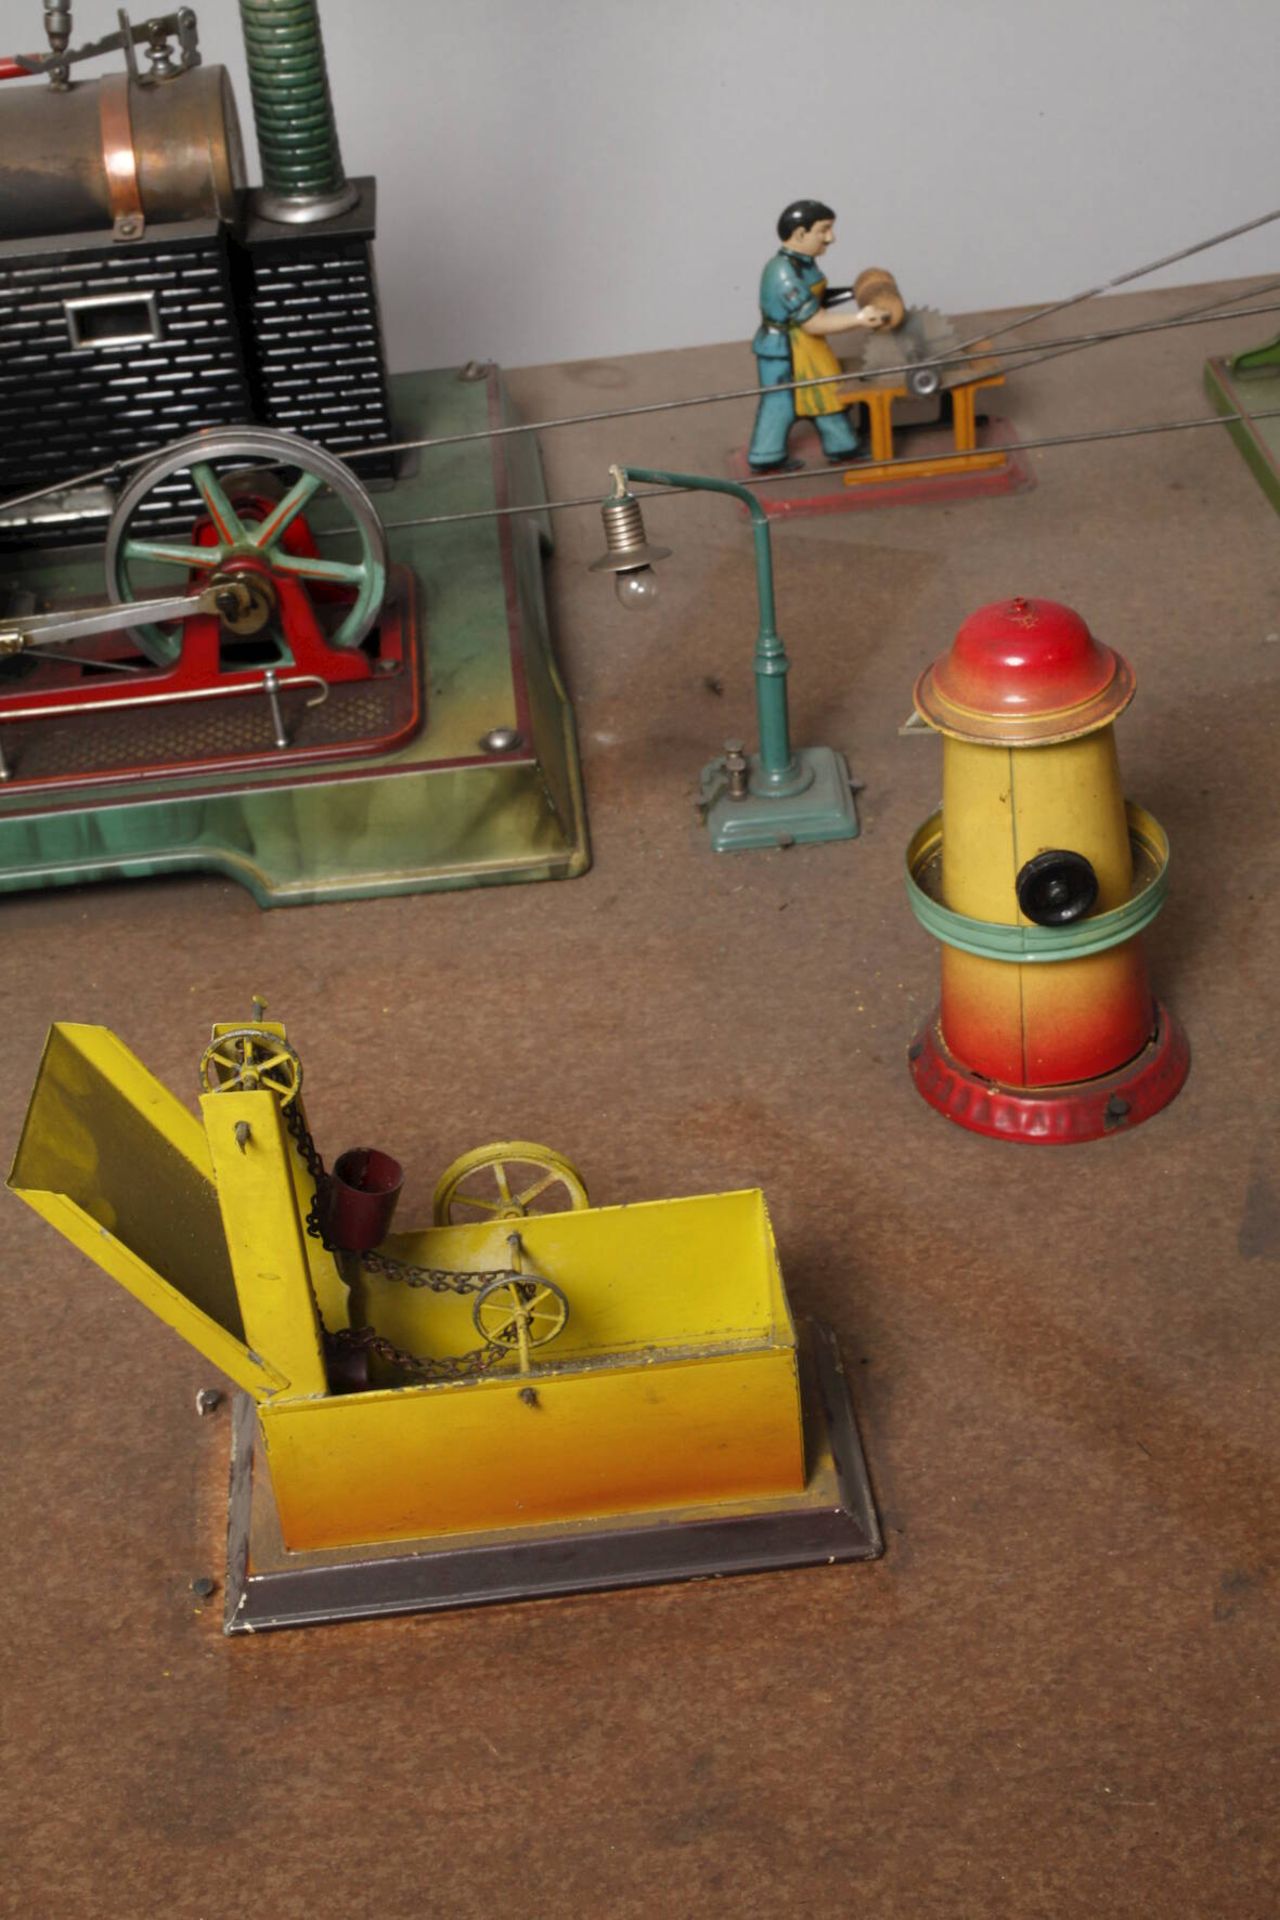 Märklin Dampfmaschine mit Zubehör1930er Jahre, teils gemarkt, Guss und Blech farbig gefasst bzw. - Image 3 of 4